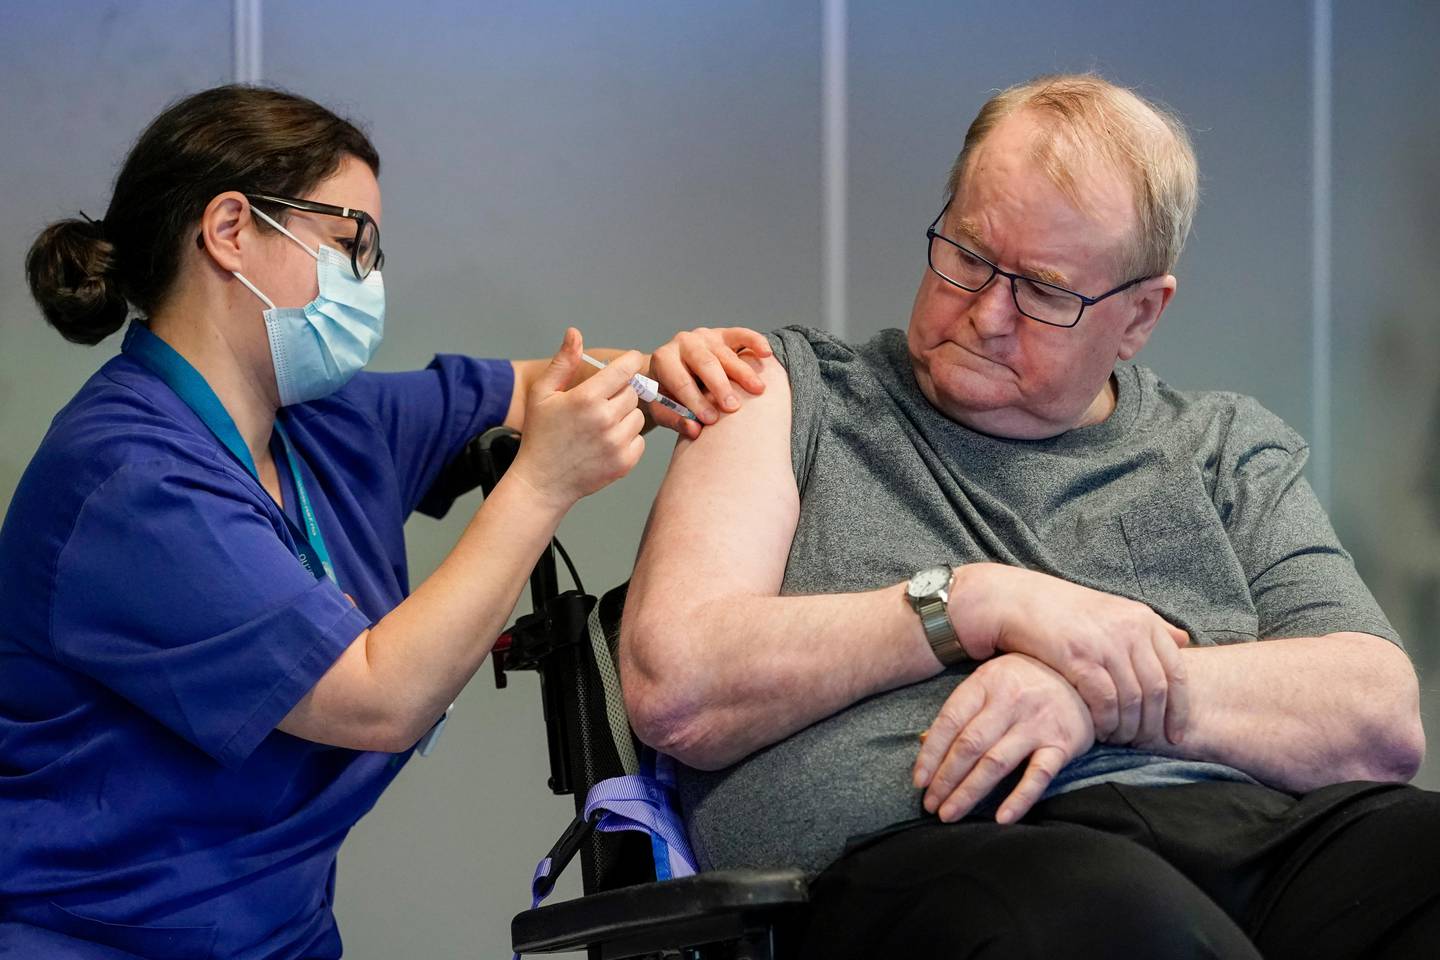 Oslo 20201227. 
Sykepleier Maria Golding vaksinerer Svein Andersen (67) mot koronaviruset (Covid-19). Svein Andersen (67) beboer på Ellingsrudhjemmet var den første i Norge som fikk vaksinen.
Foto: Fredrik Hagen / NTB